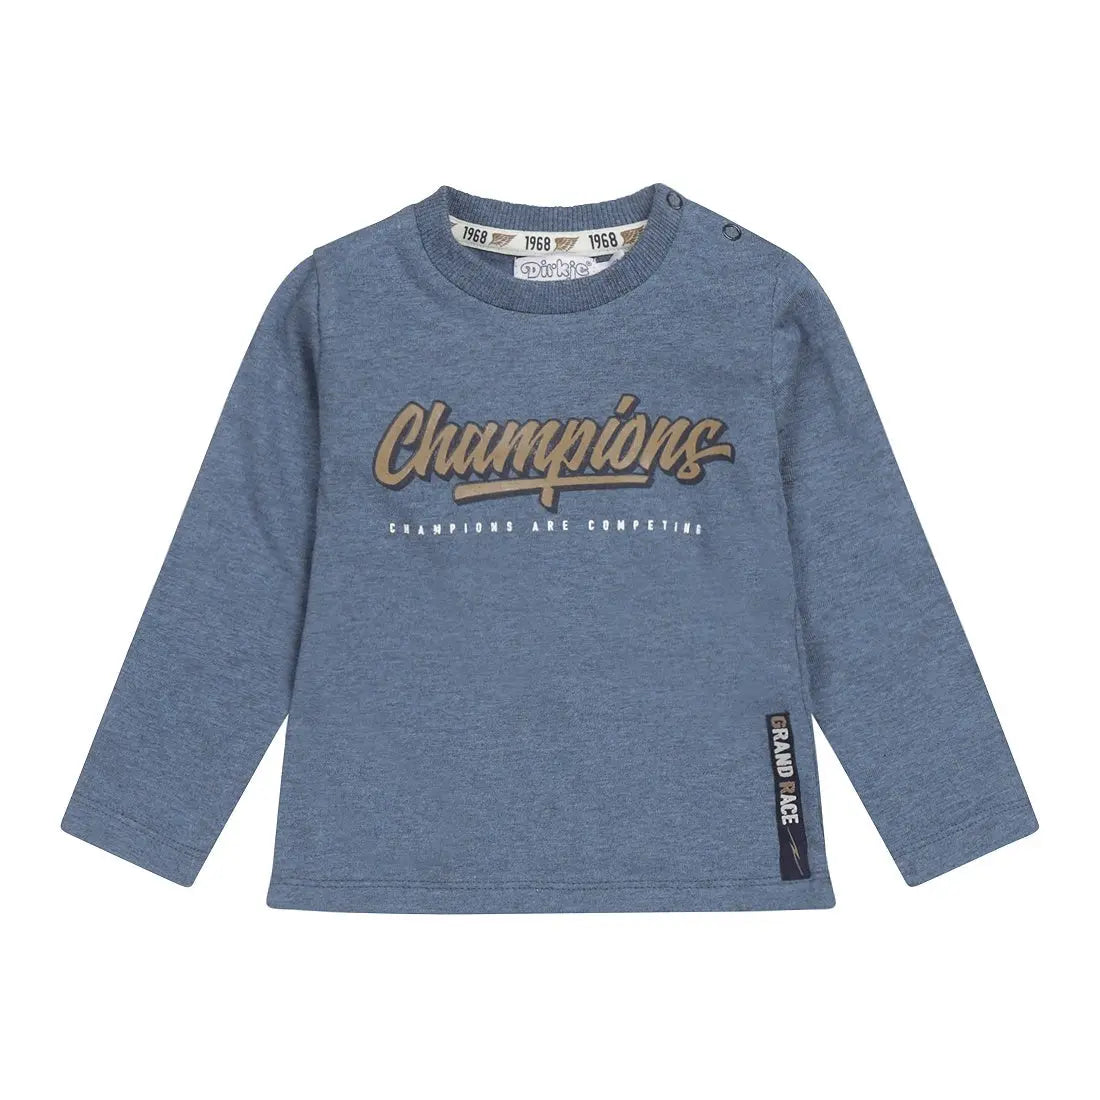 Buy Baby & Toddler Boys Shirt Blue Melange Champions | Dirkje online